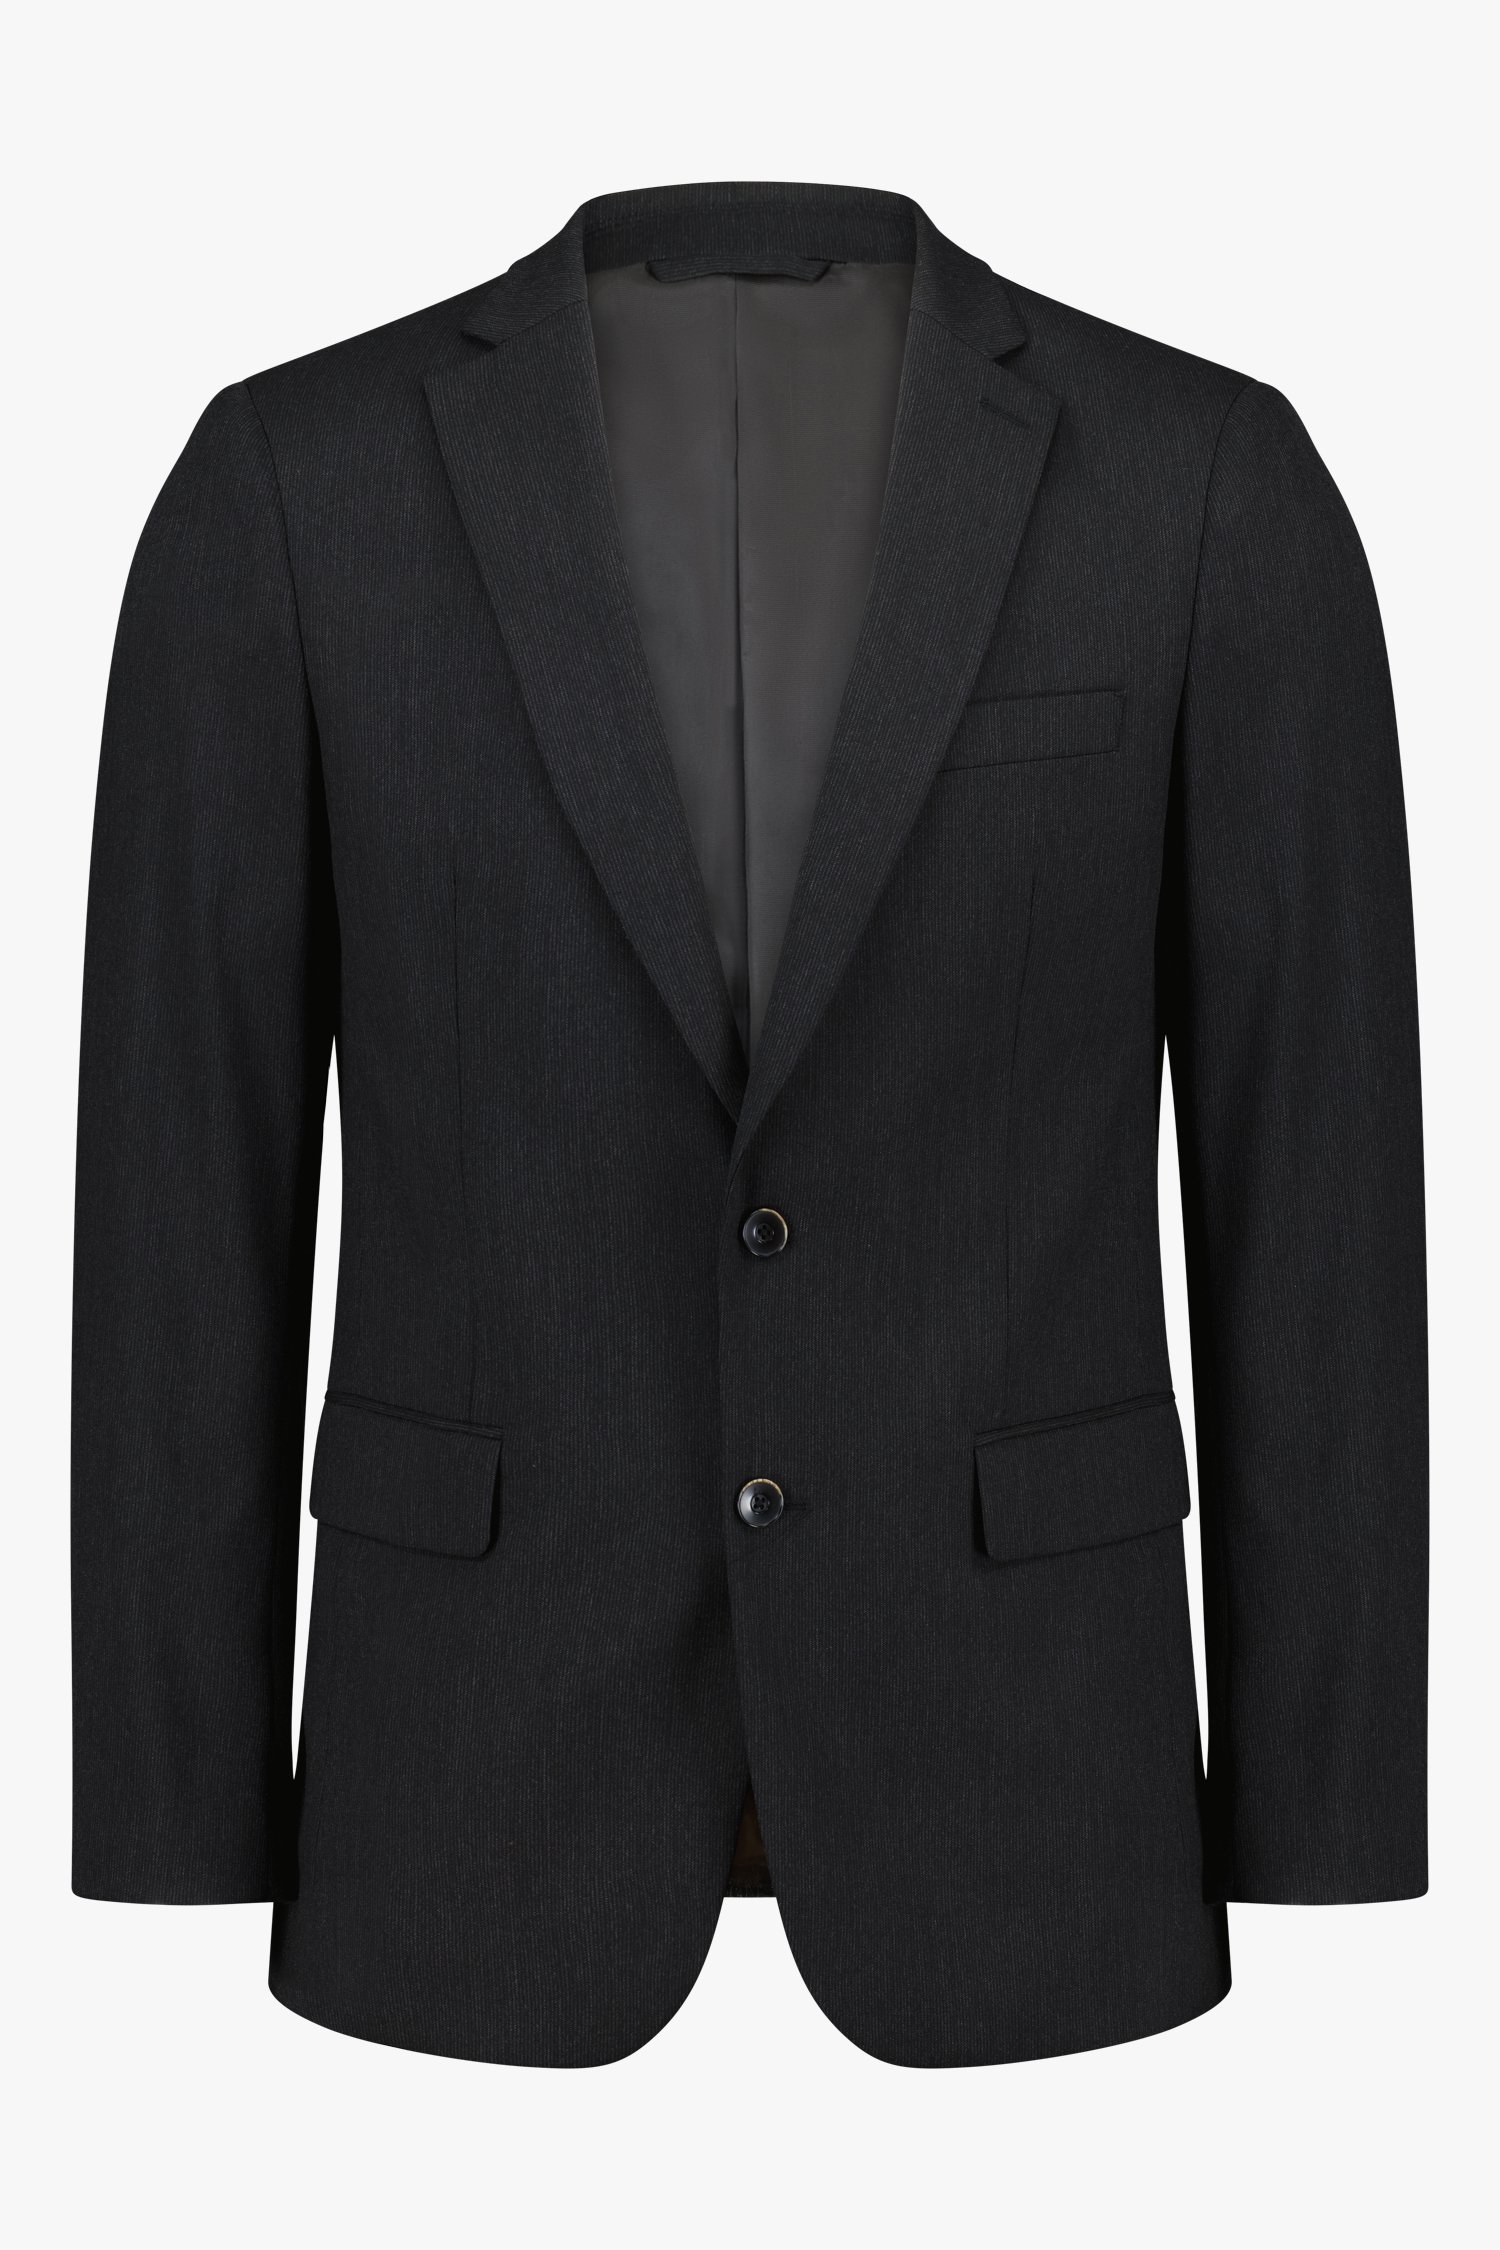 Veste de costume grise - regular fit de Dansaert Black pour Hommes